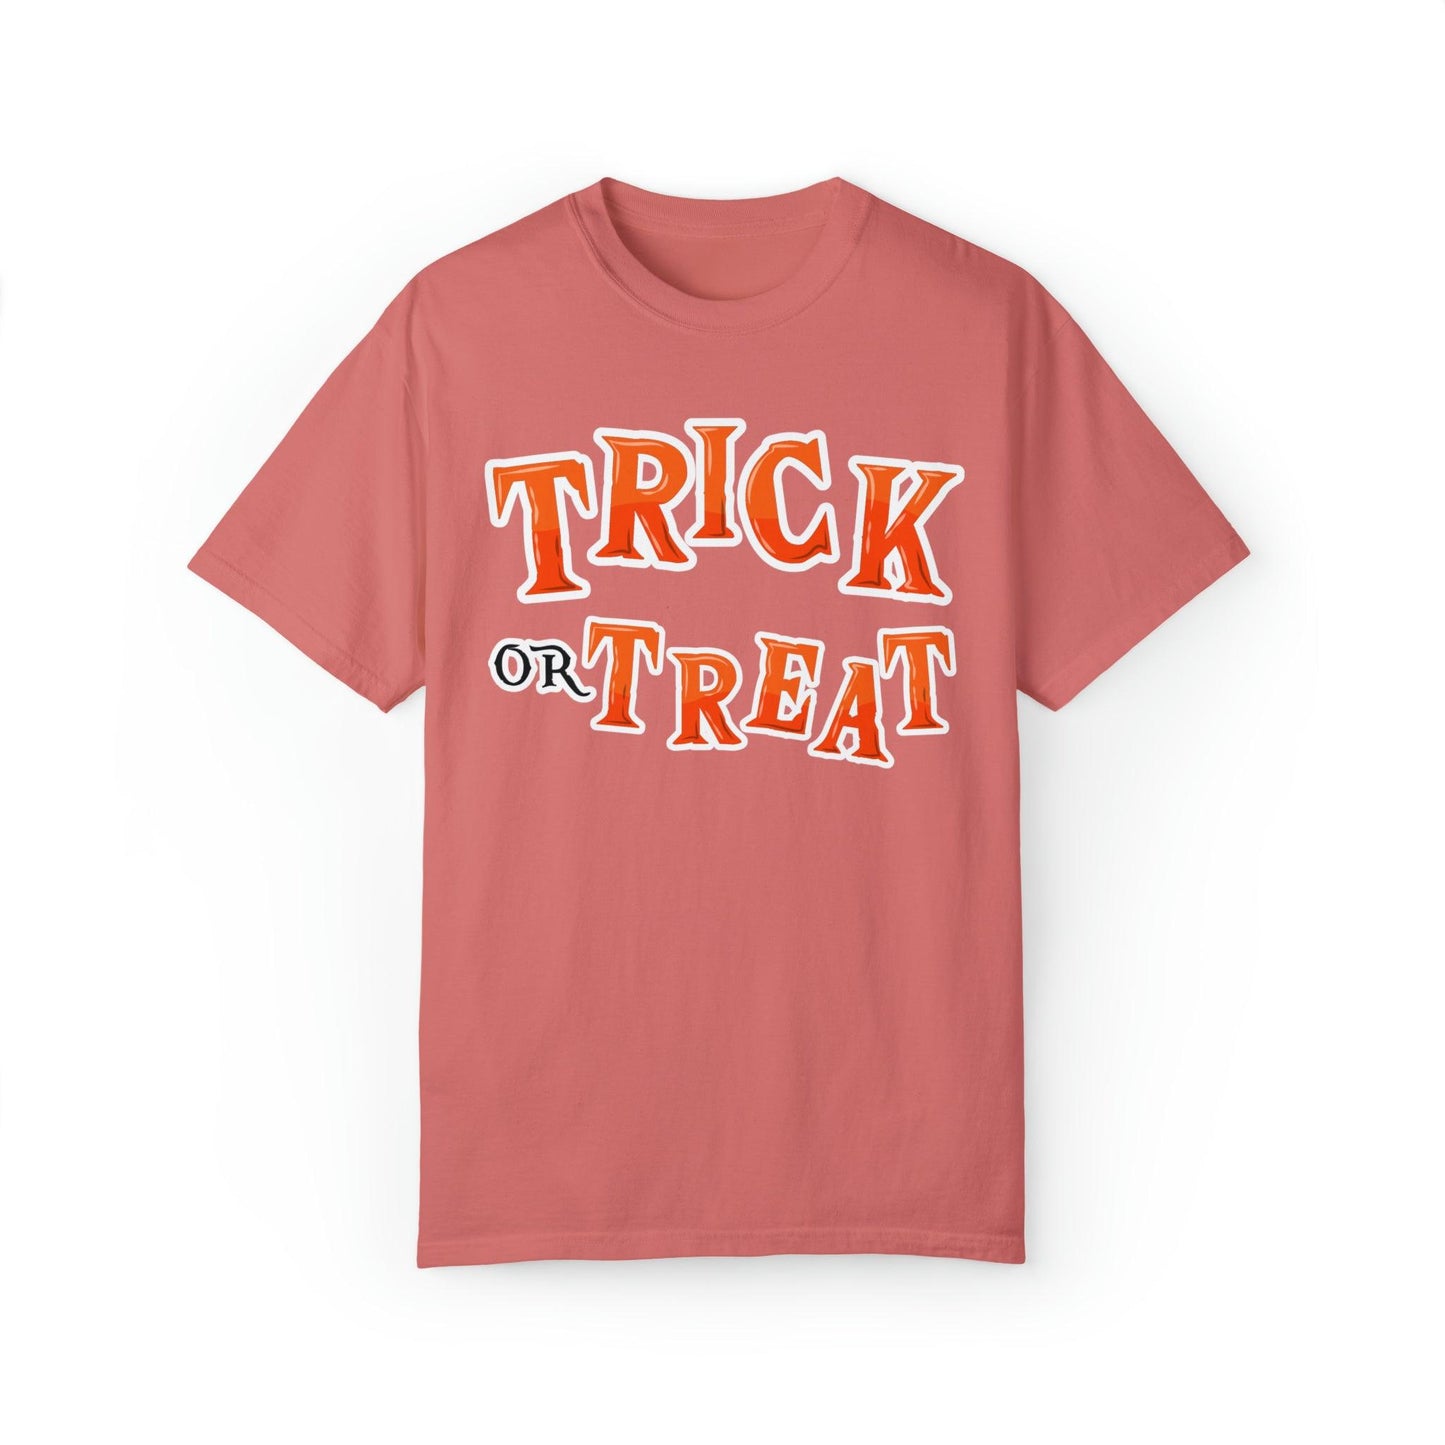 Retro Halloween Tshirt, Trick or Treat Shirt Halloween Costume Vintage Shirt Halloween Shirt Cute Spooky Shirt, Halloween Gift Halloween T-shirt